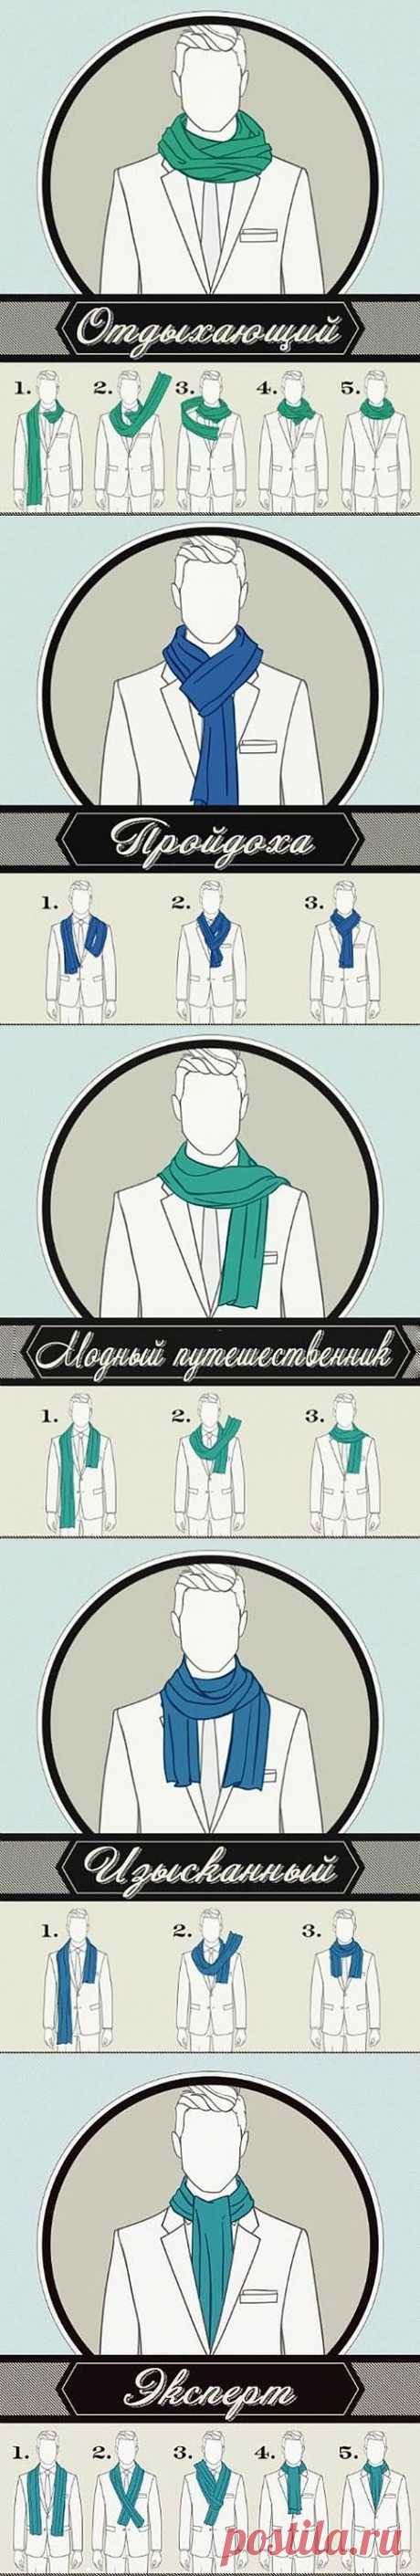 6 способов красиво завязать шарф | Полезные советы